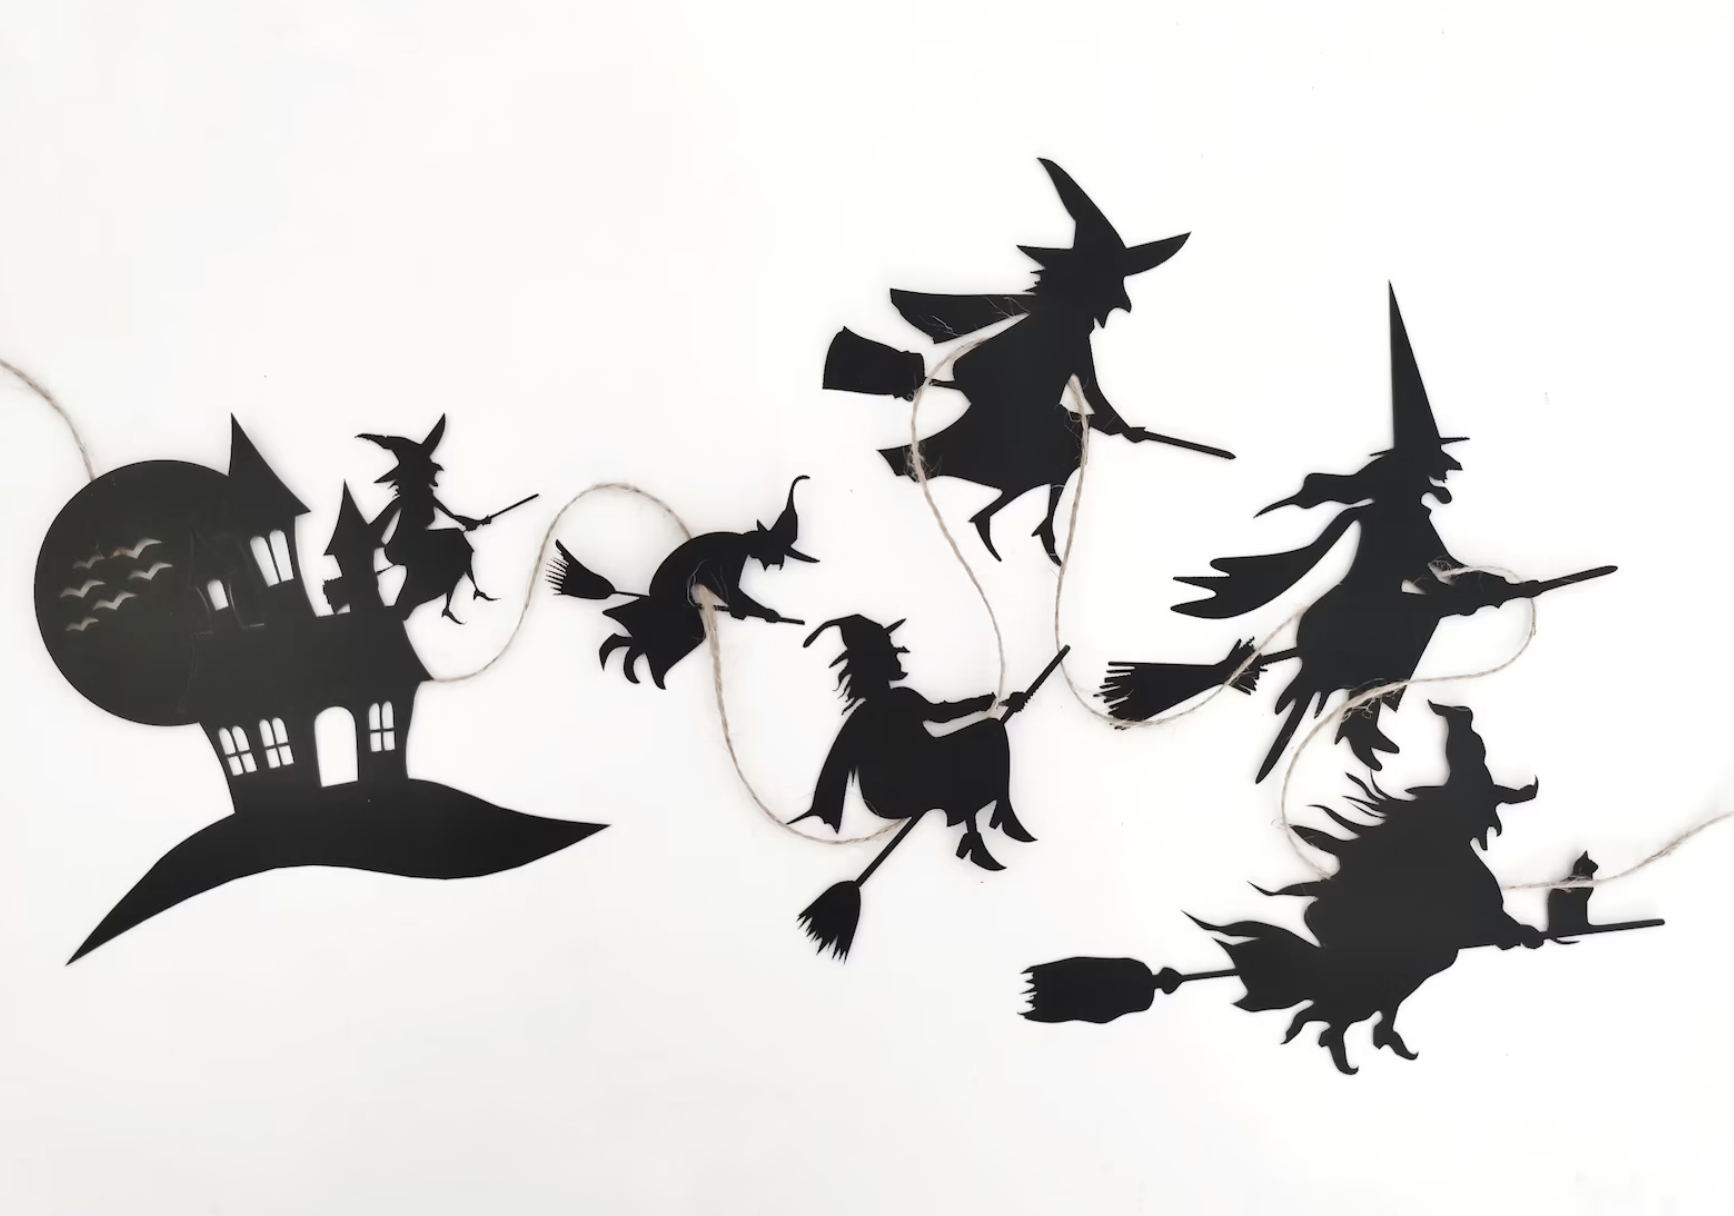 Witches Halloween garland